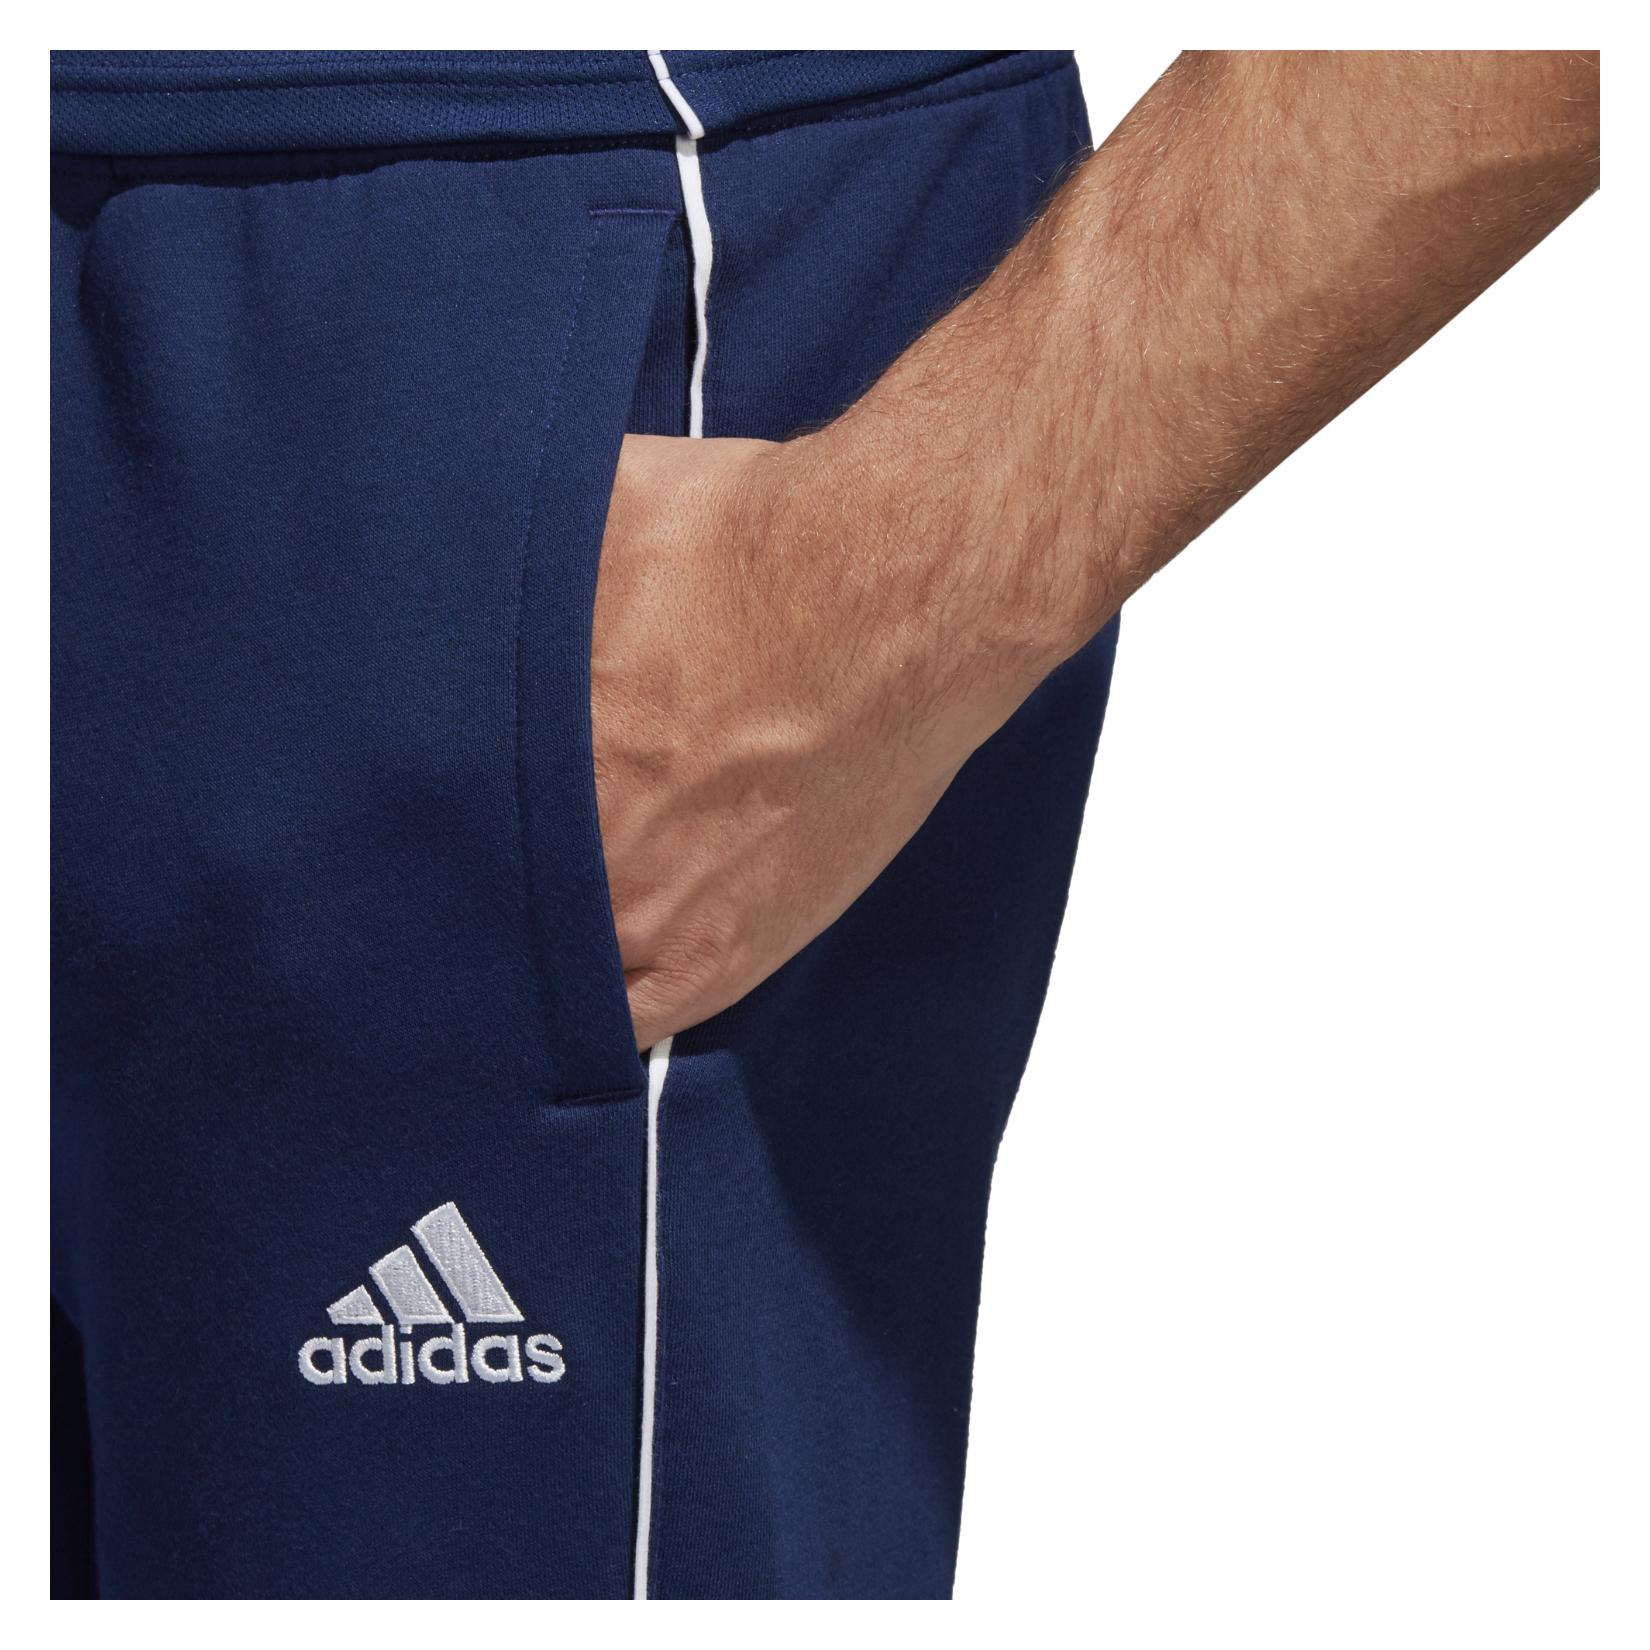 Adidas Core 18 Sweat Pant